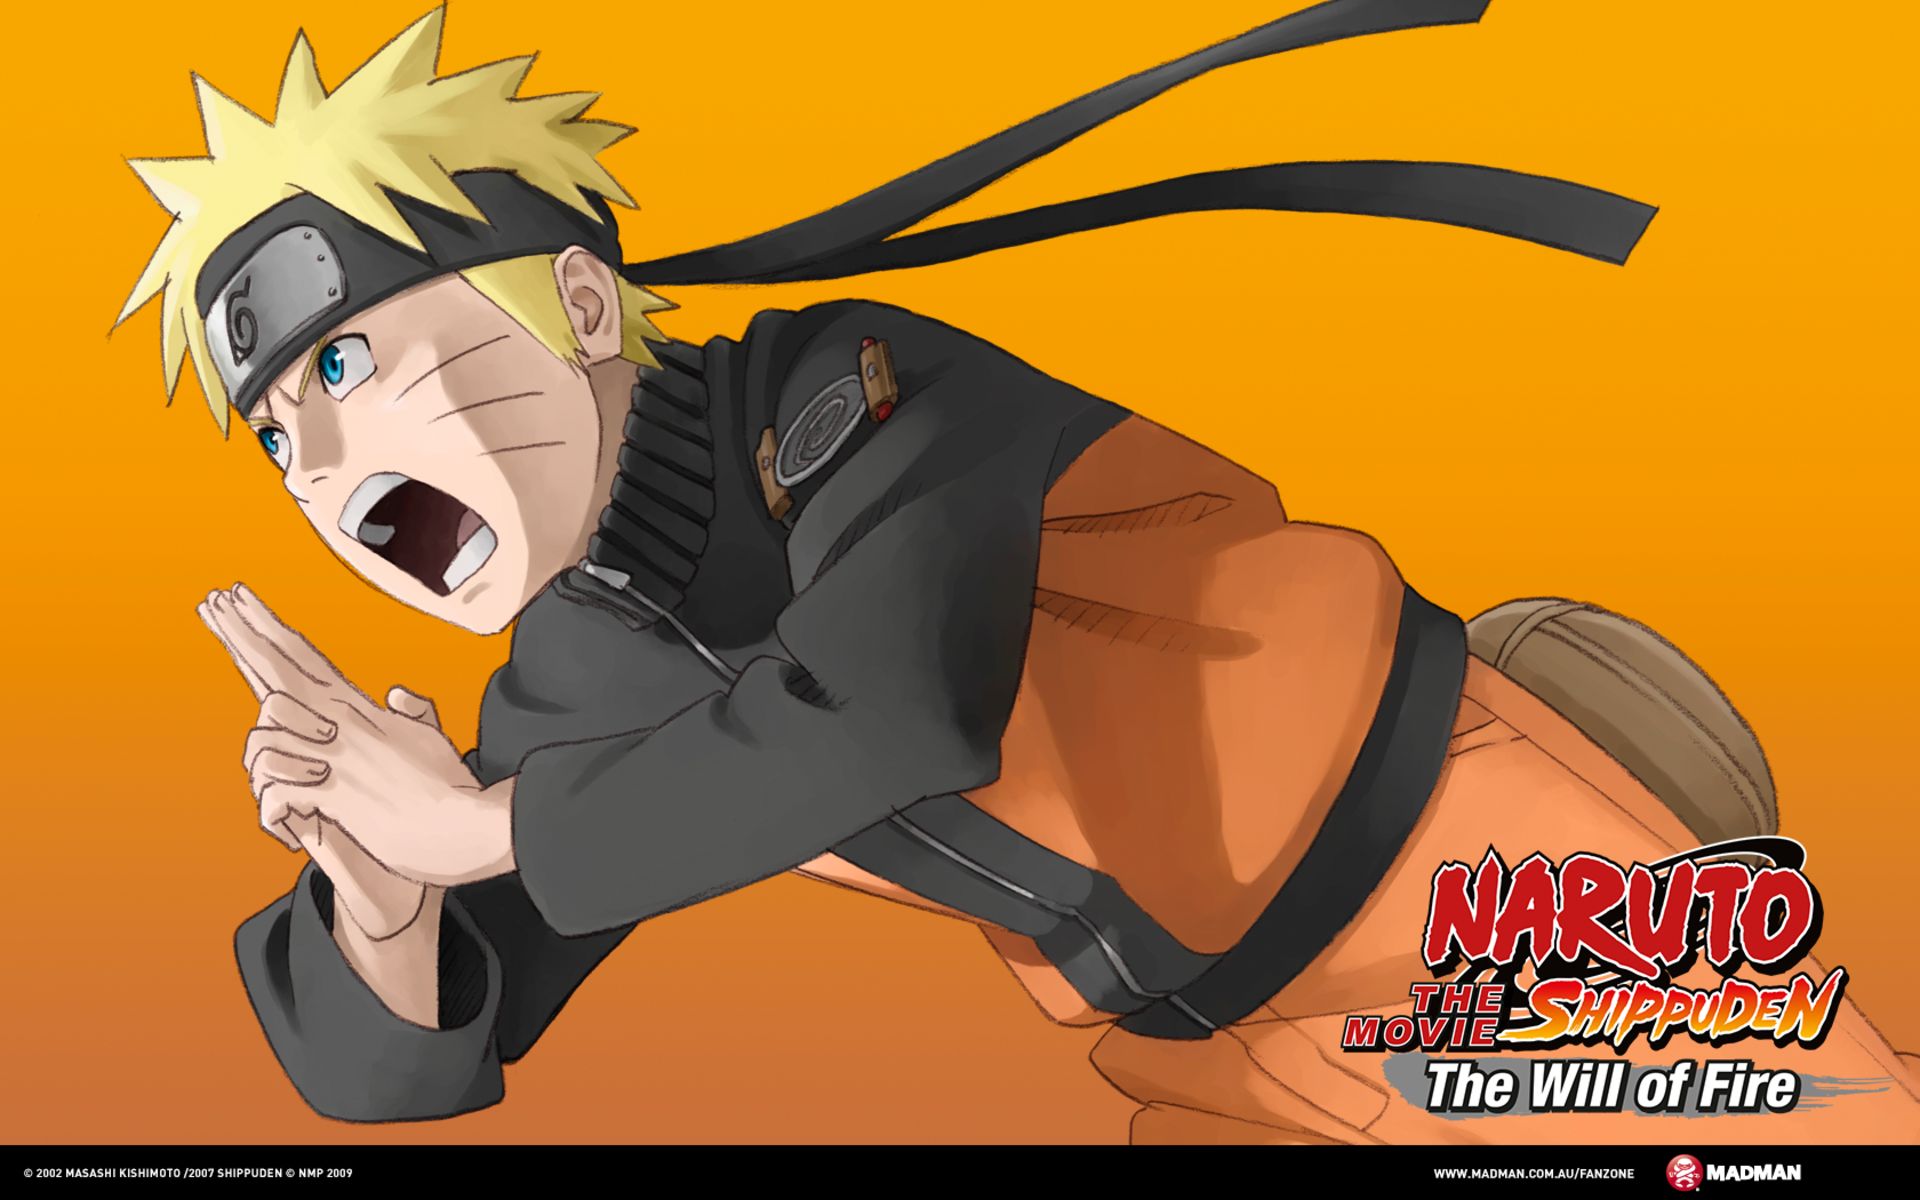 Desenho novo - Uzumaki Naruto [Naruto Shippuden]